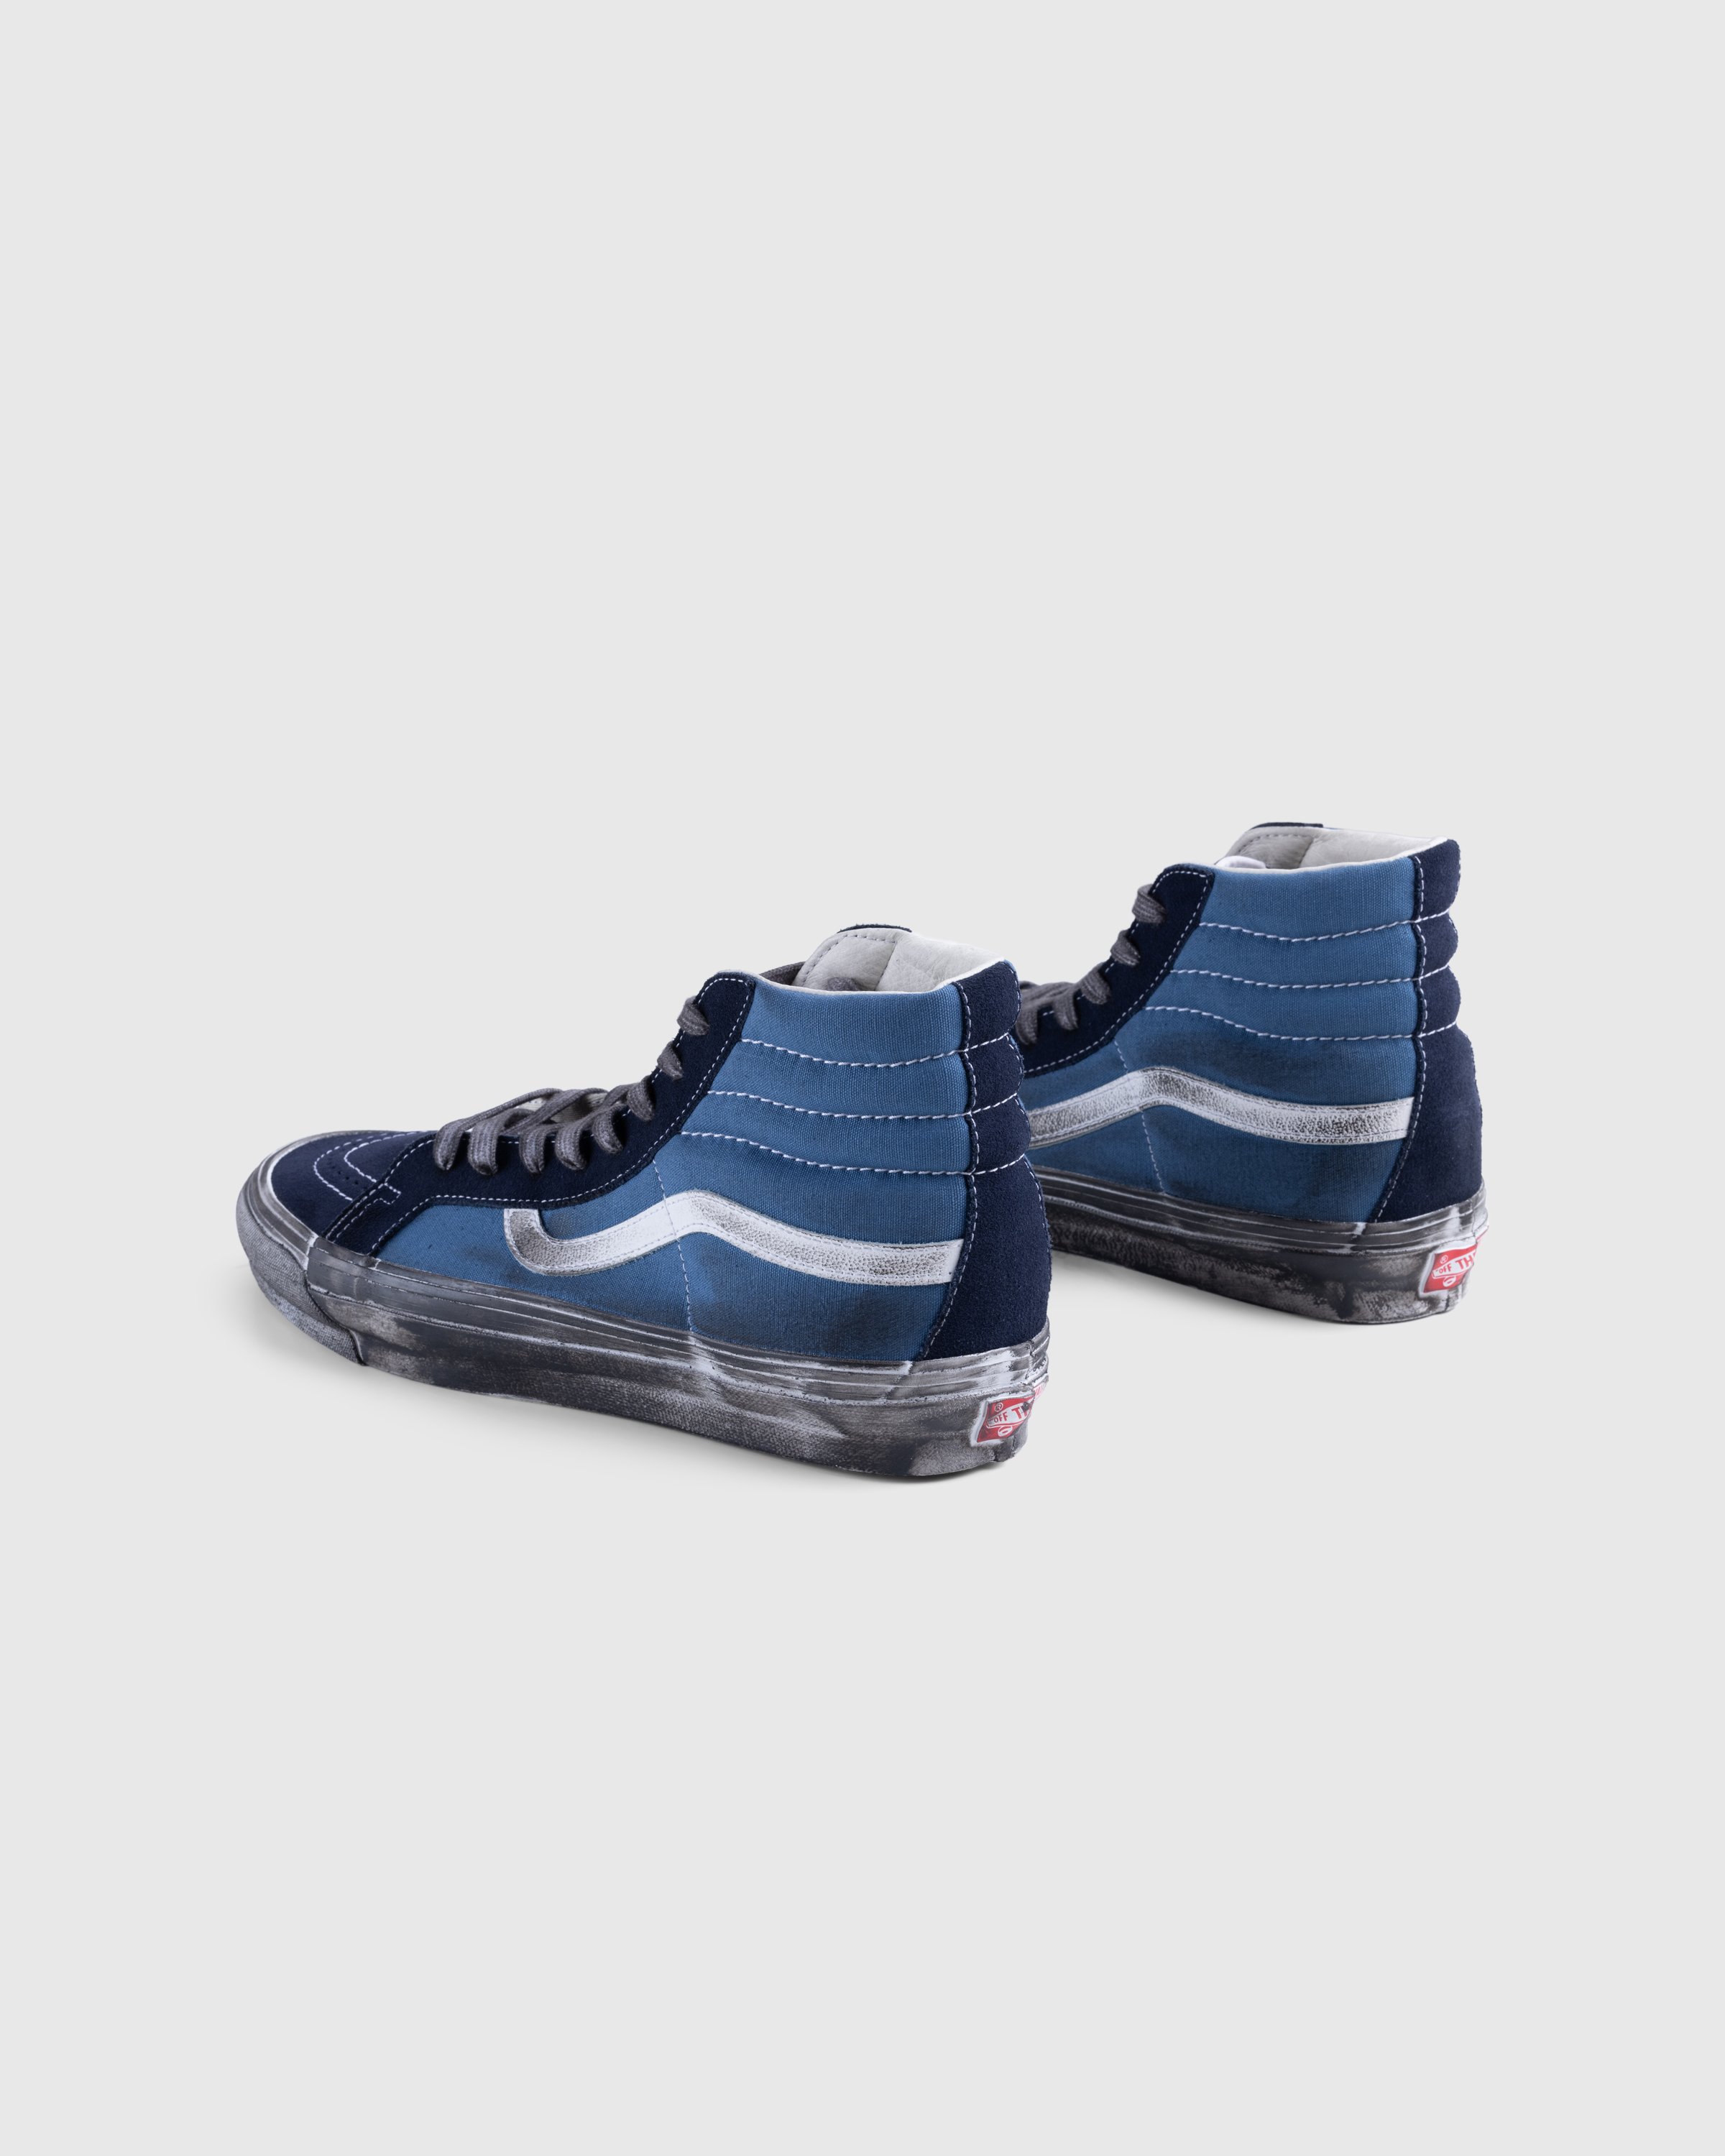 Vans - UA OG SK8-Hi LX STRE DKBRN - Footwear - Blue - Image 4